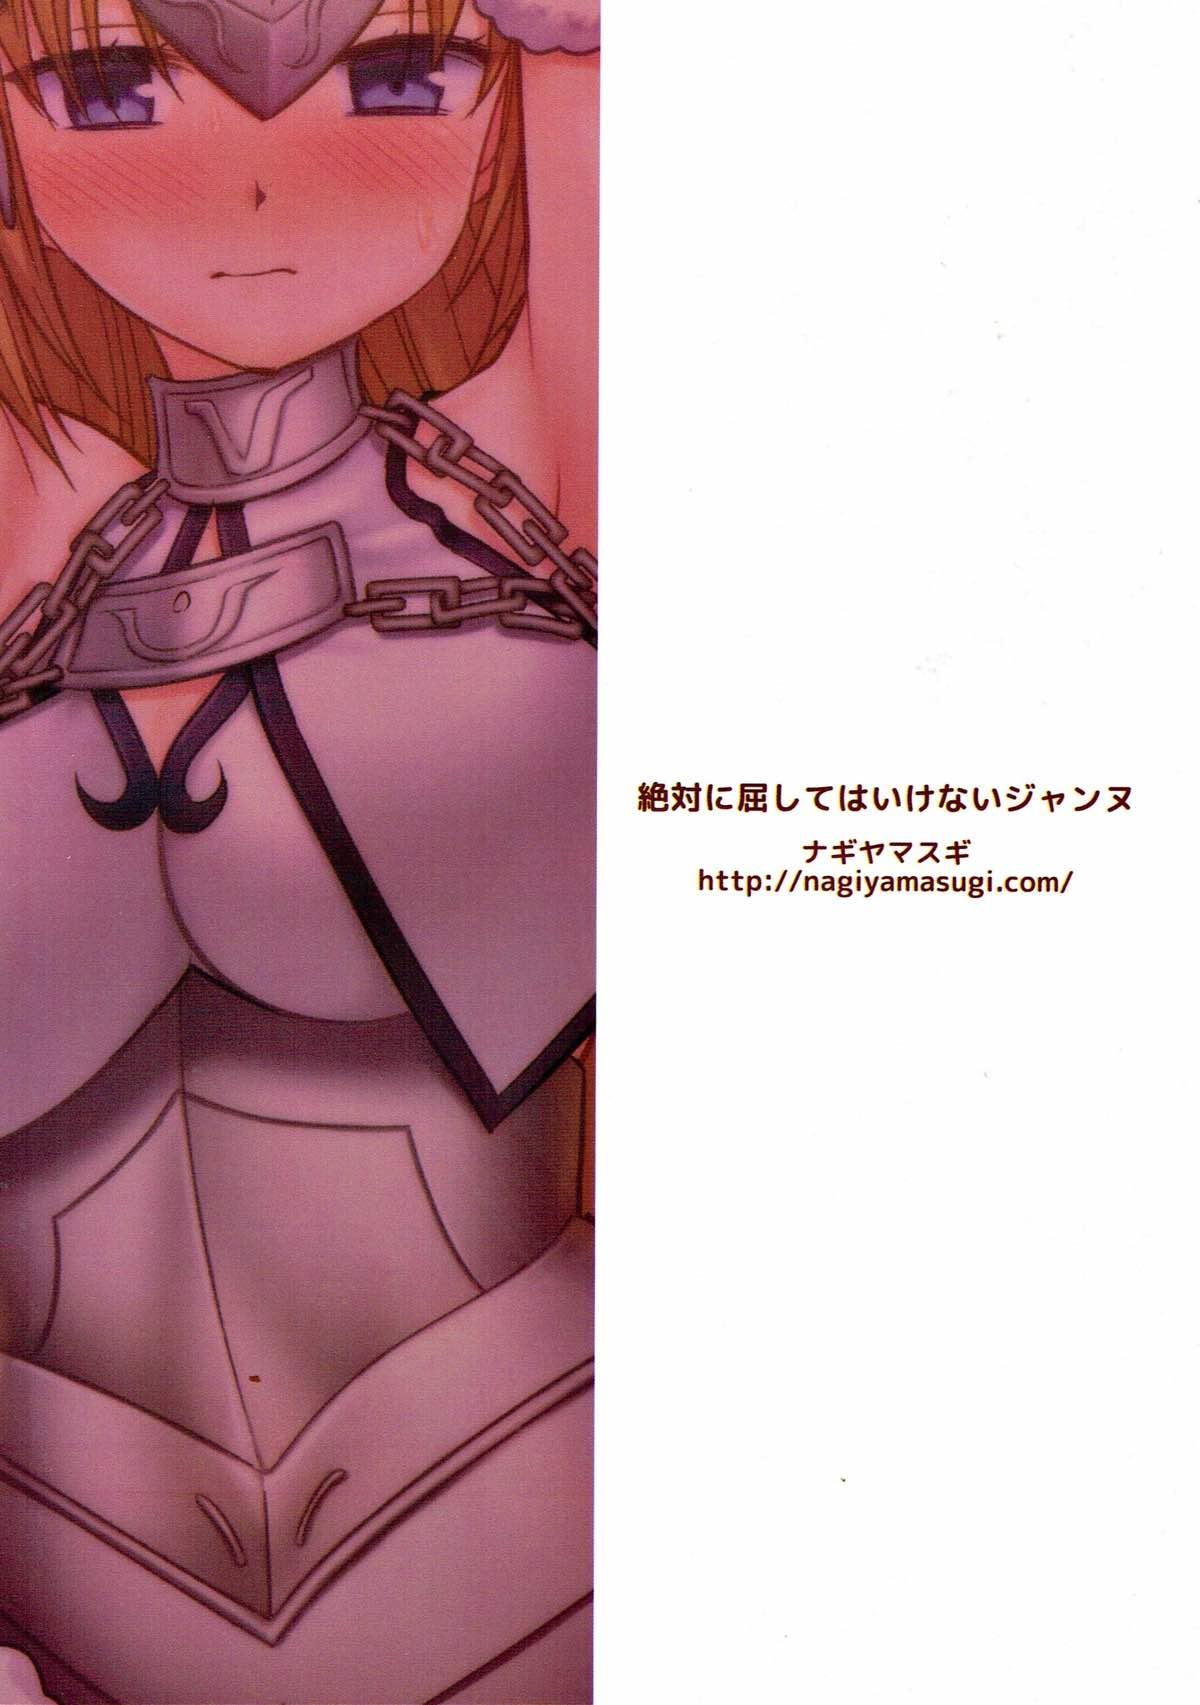 Muscular Zettai ni kusshite wa ikenai Jeanne - Fate grand order Bed - Page 17